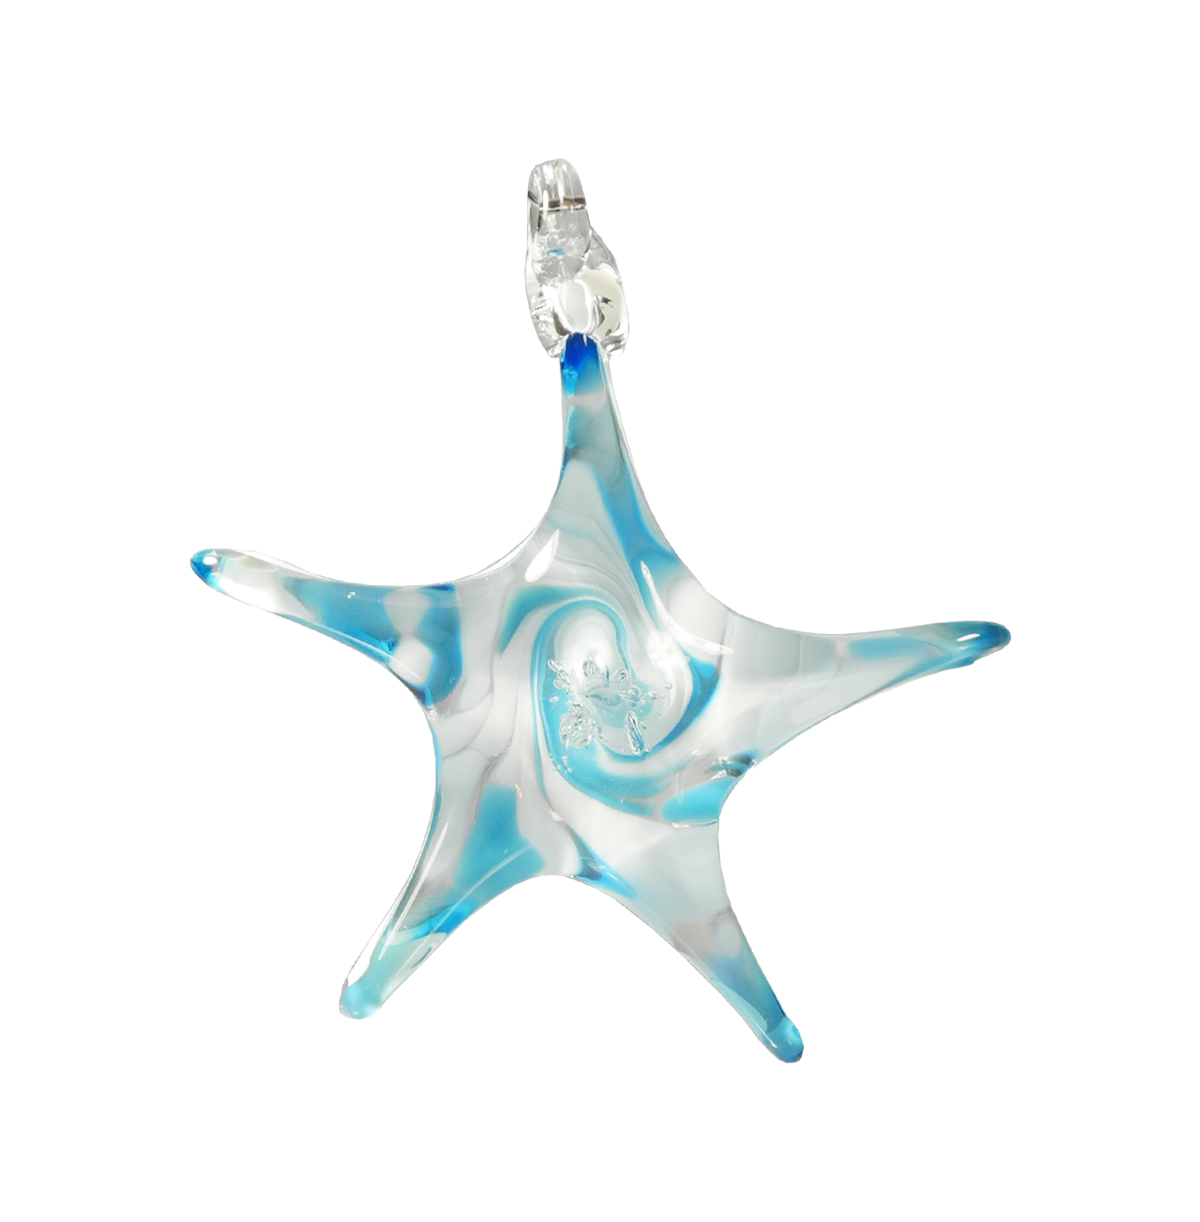 Star Ornament - Glass Art - Kingston Glass Studio - Blown Glass - Glass Blowing